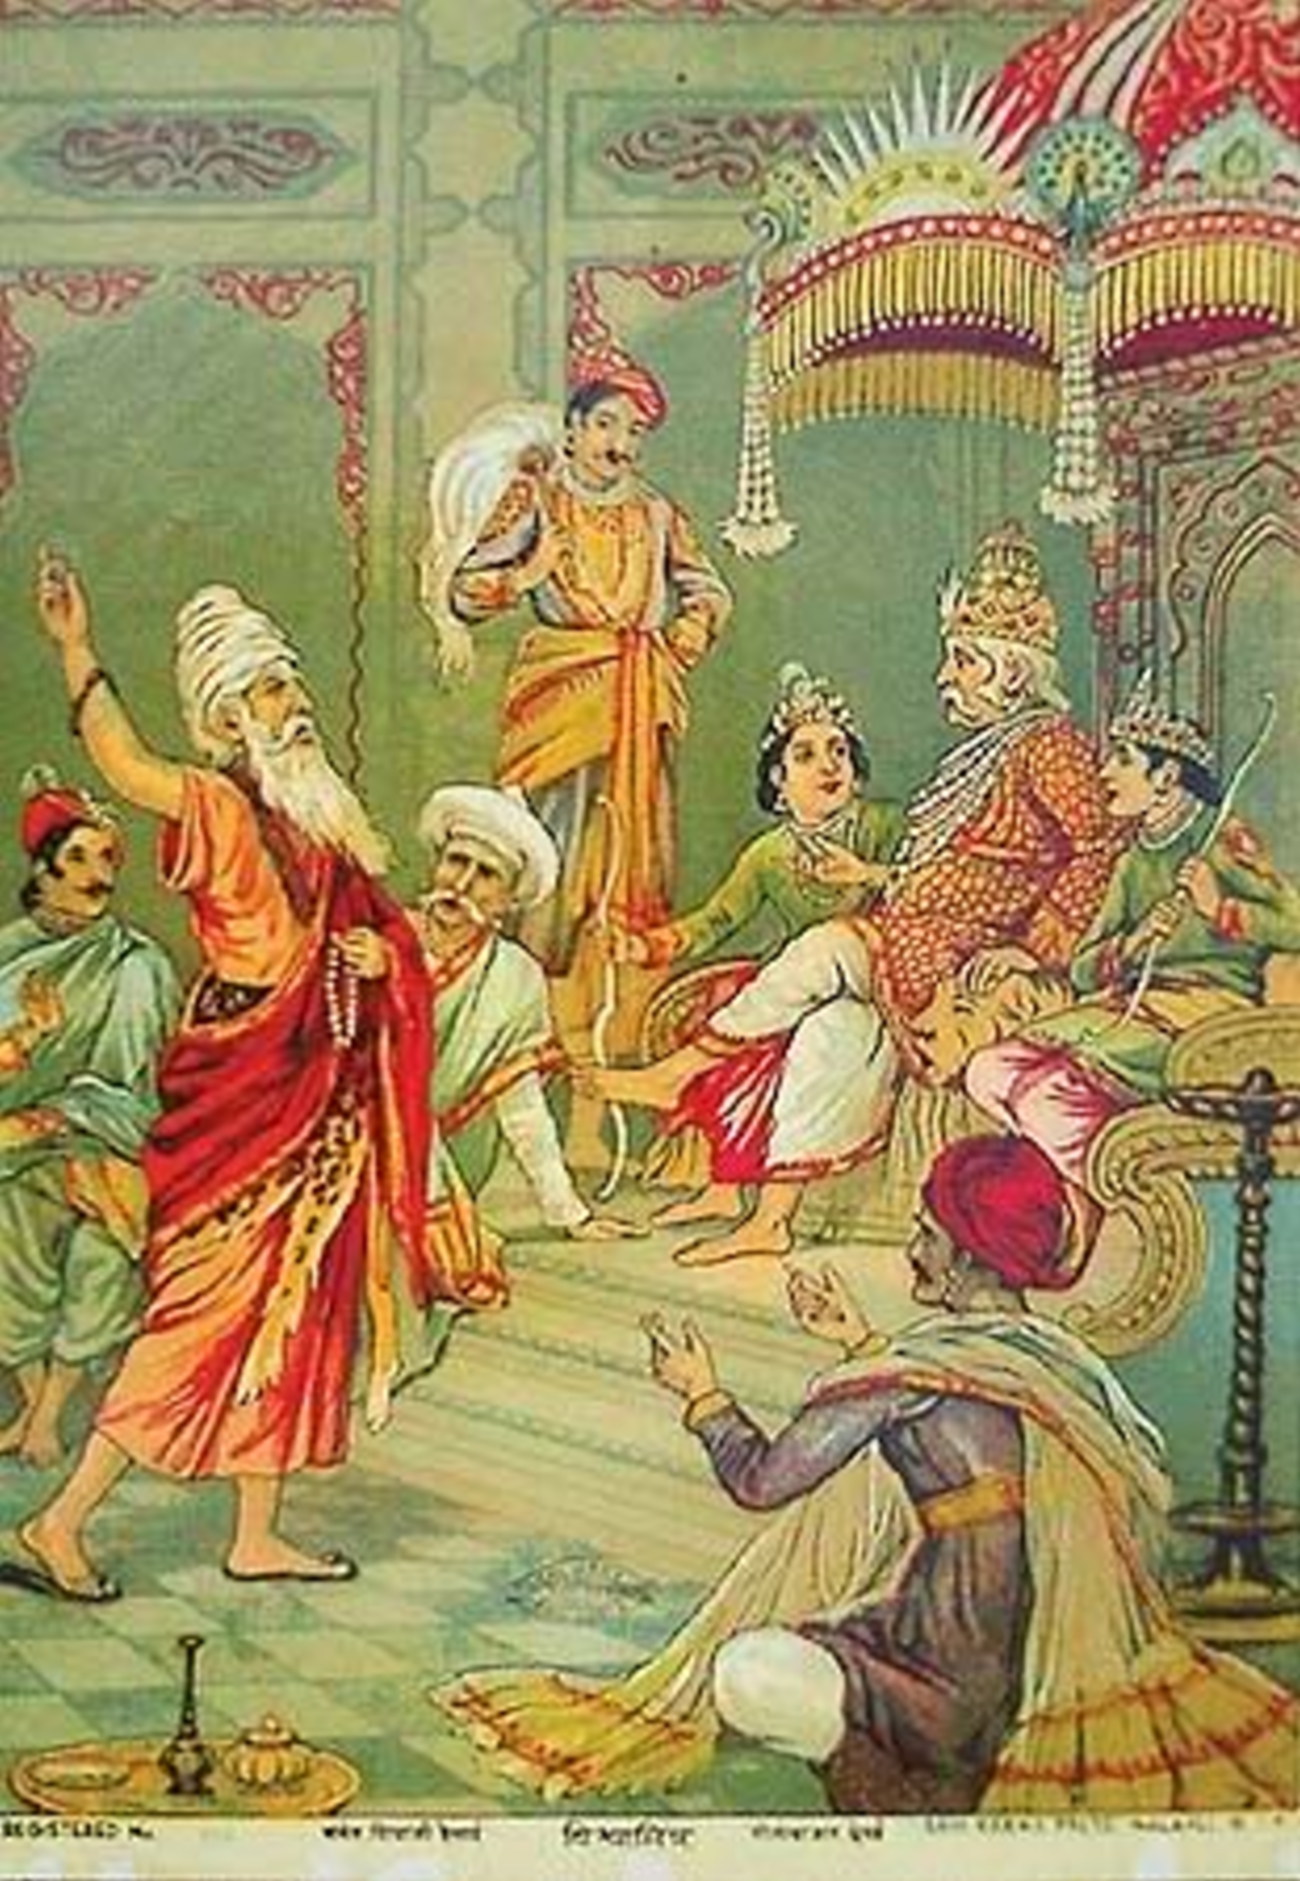 bala-kanda-vyasa-mahabharata